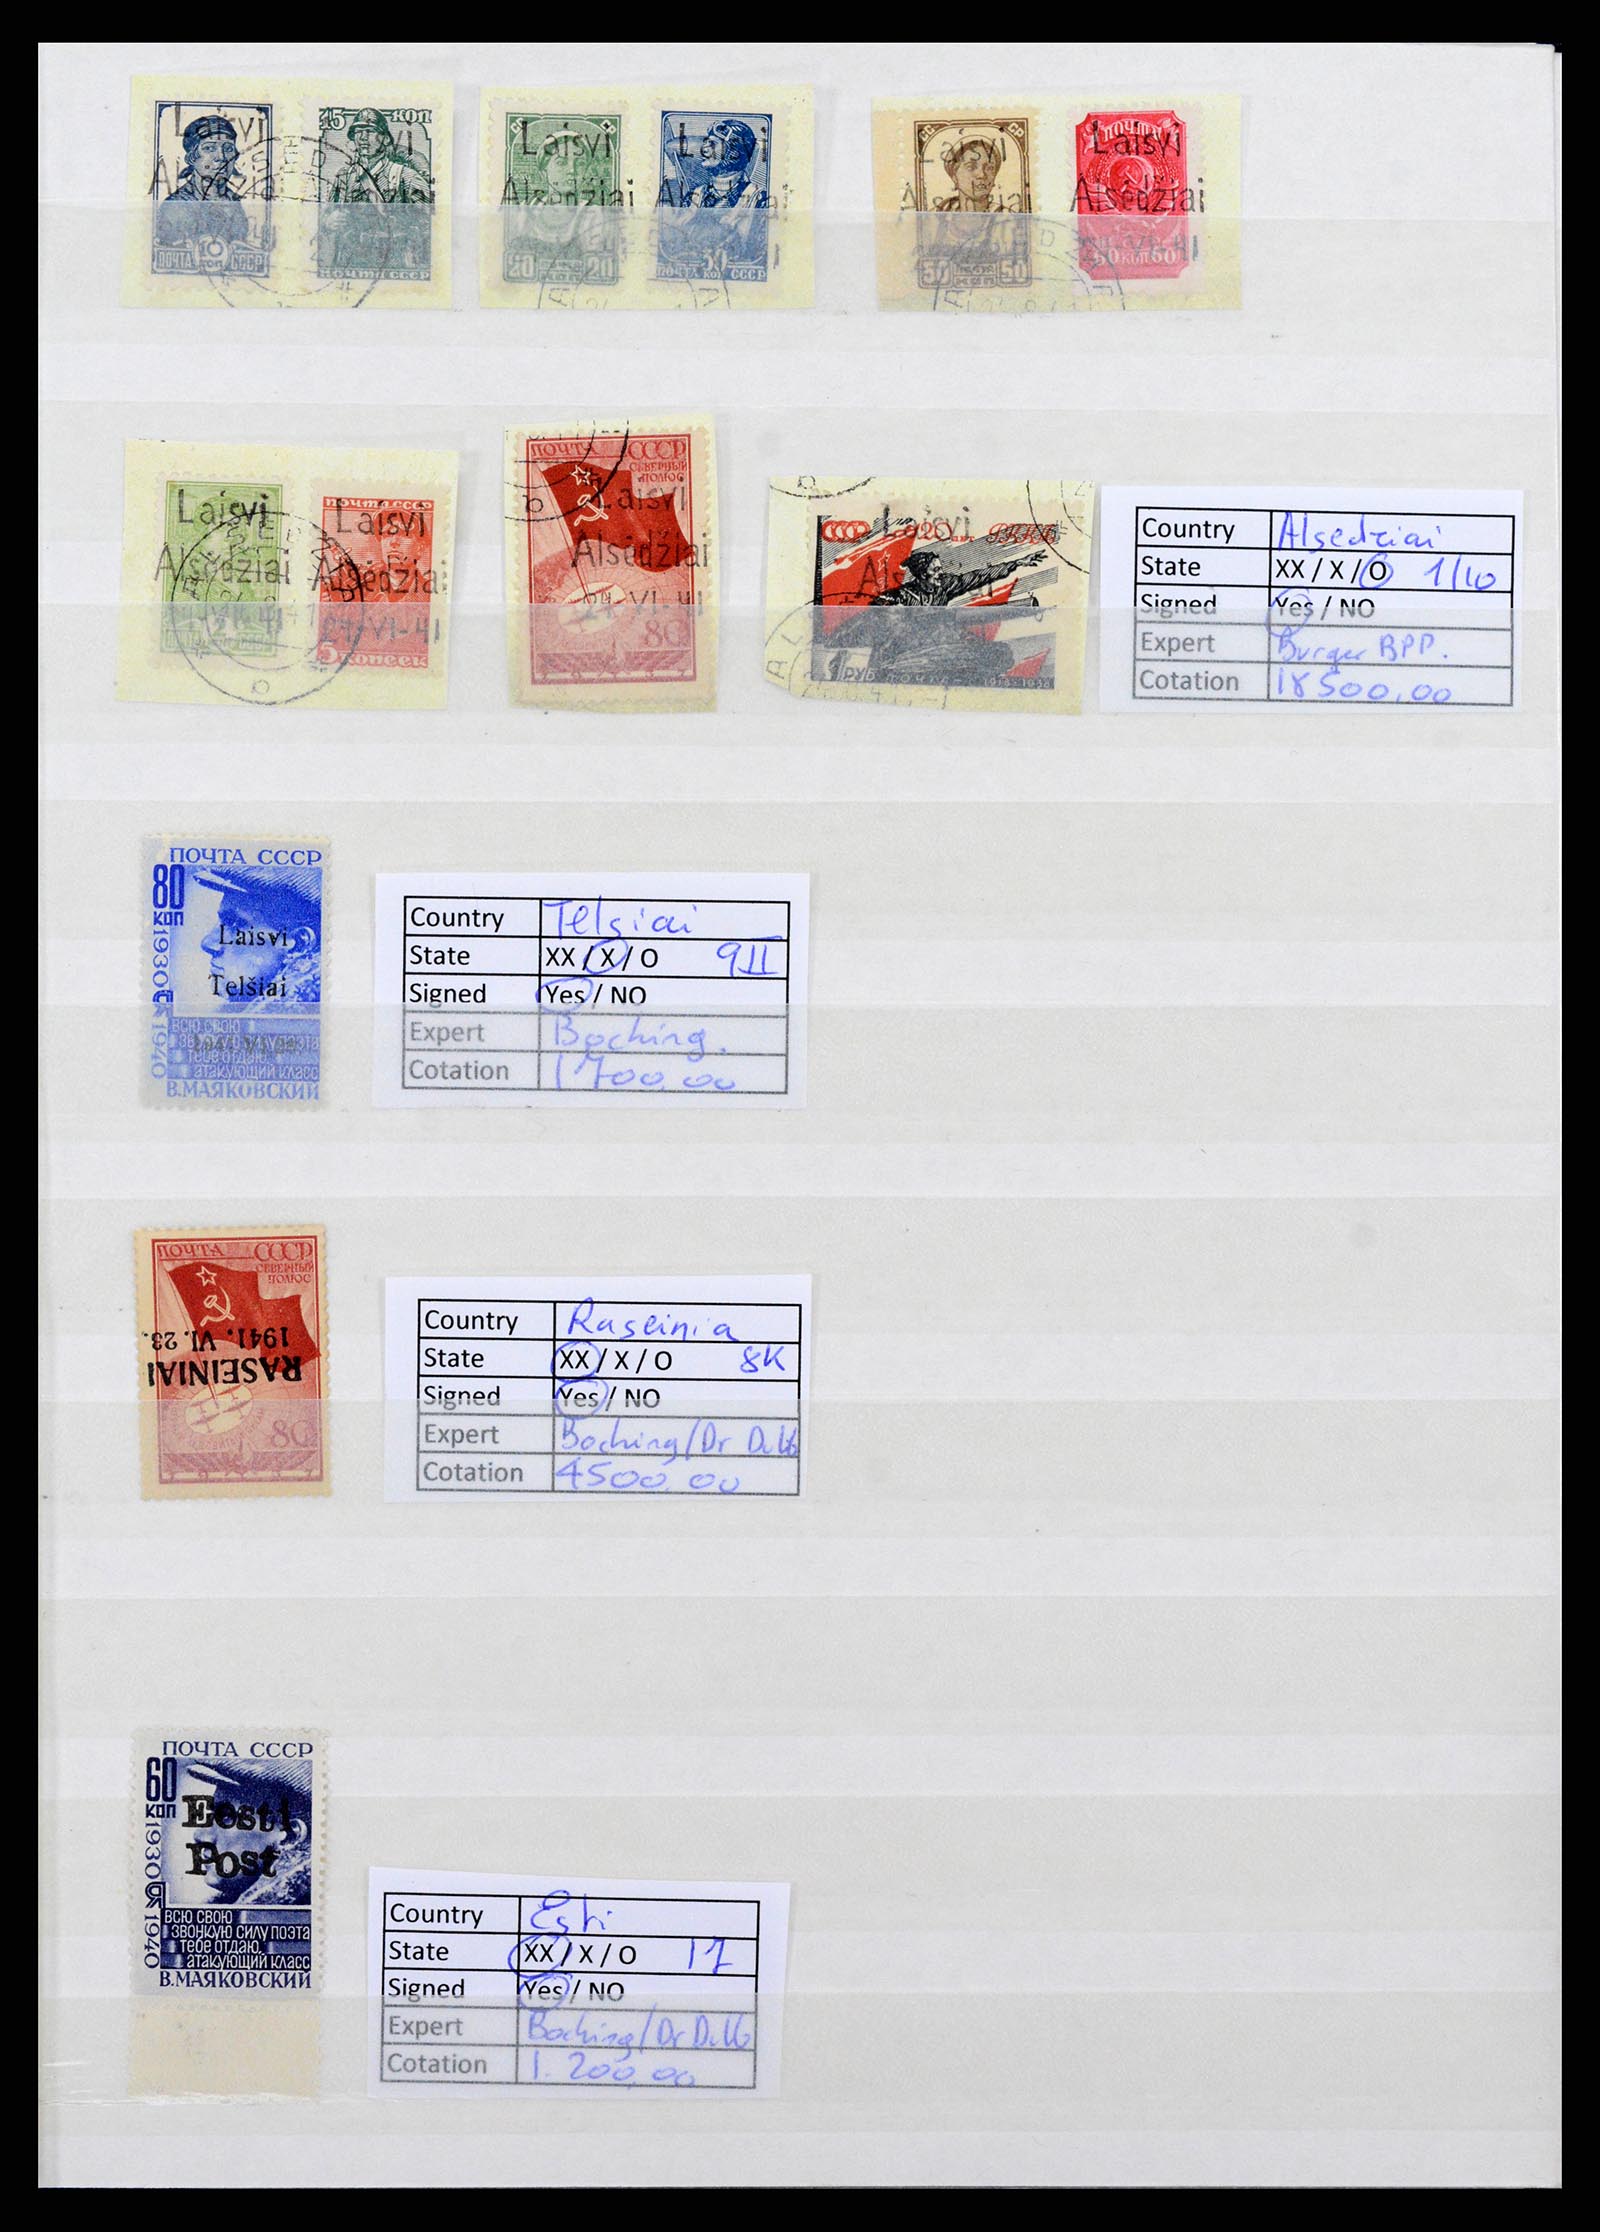 37690 001 - Stamp collection 37690 German occupation 2nd worldwar 1939-1945.